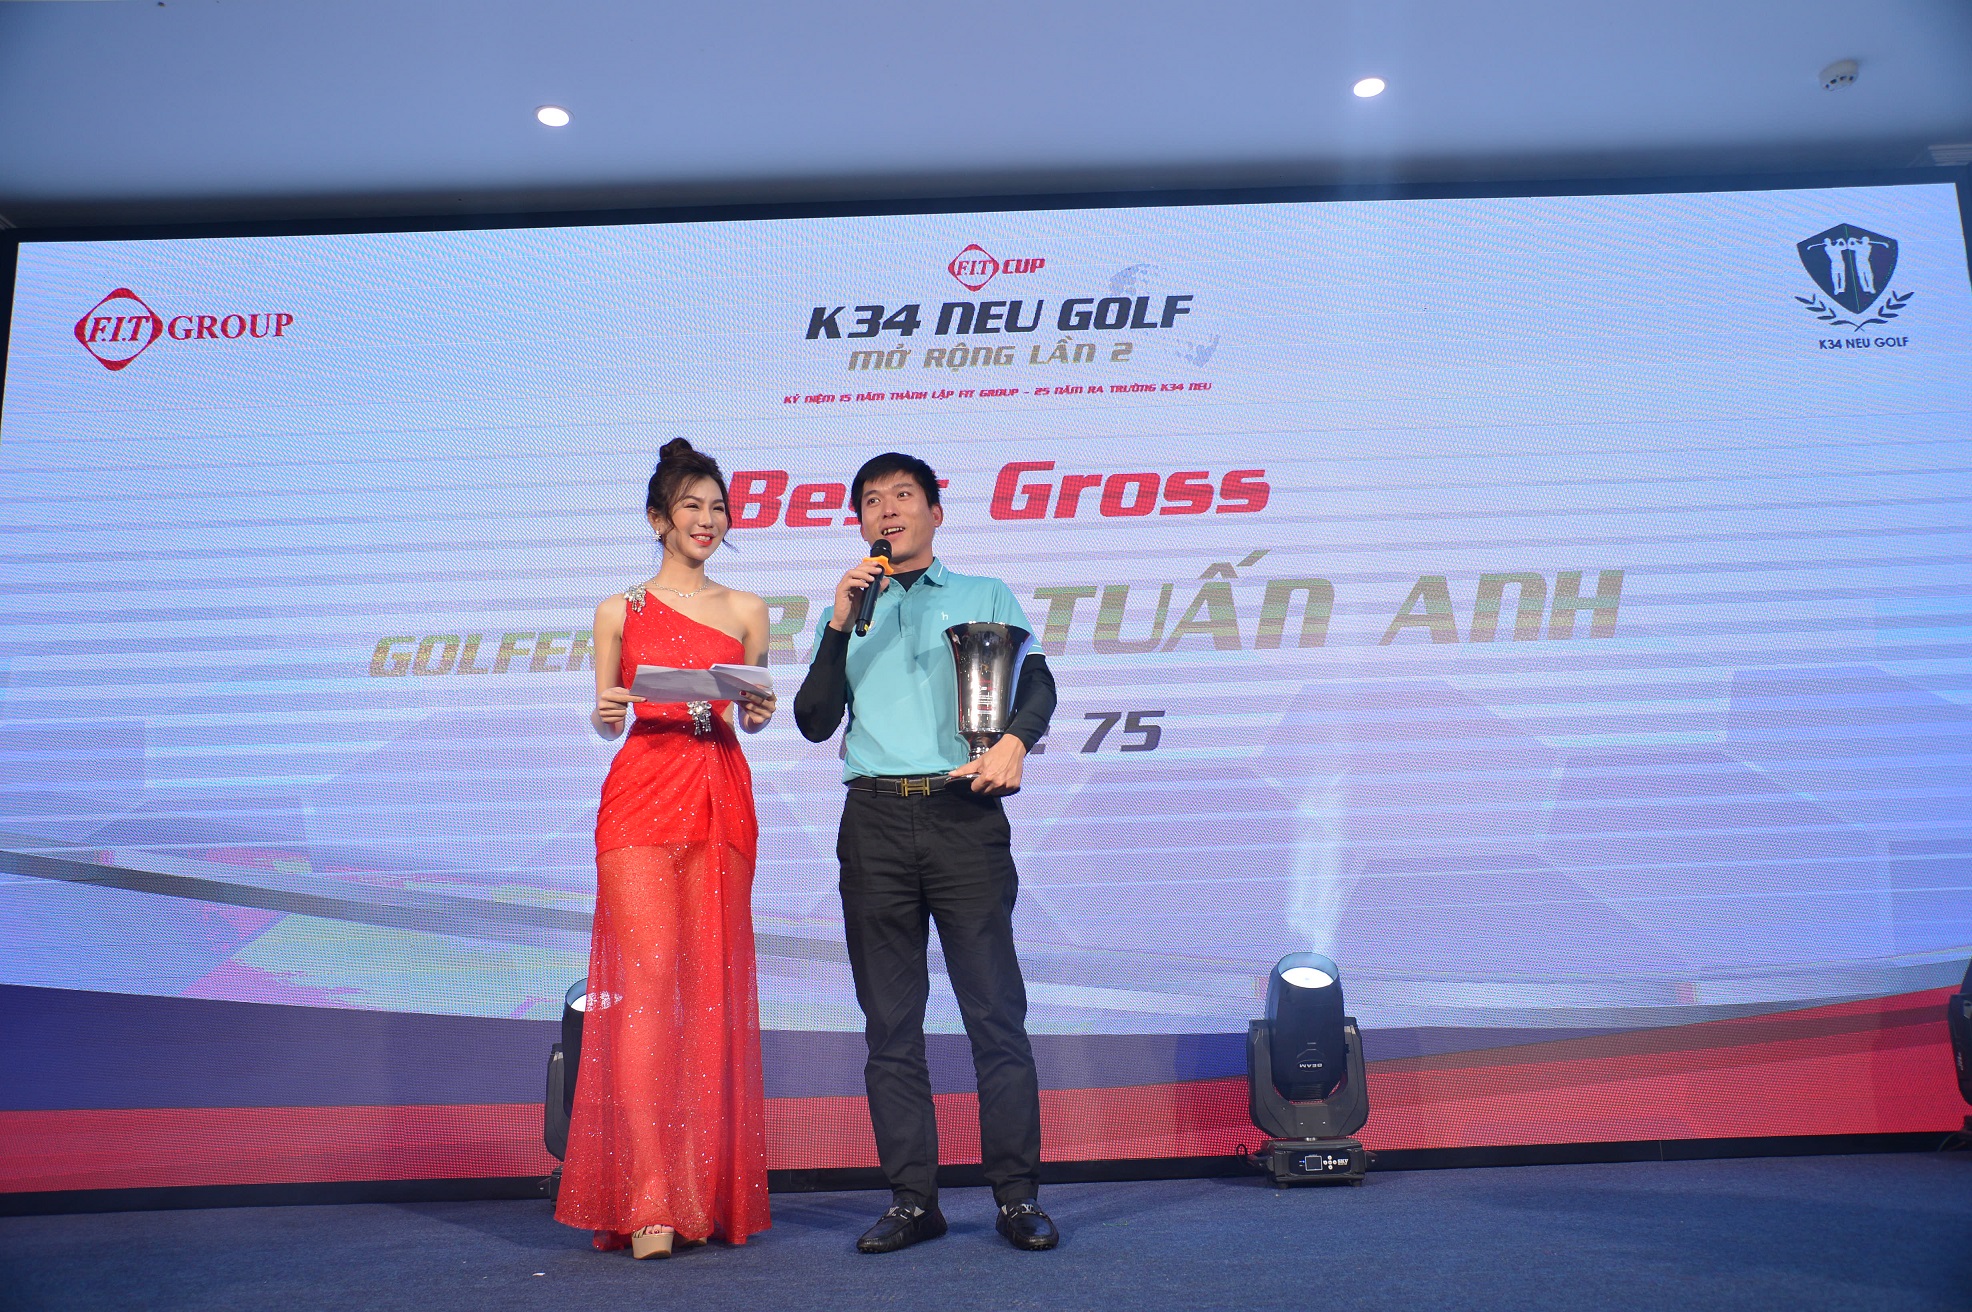 Đánh 75 gậy, golfer Trần Tuấn Anh vô địch giải FIT Cup K34 NEU Golf mở rộng lần 2